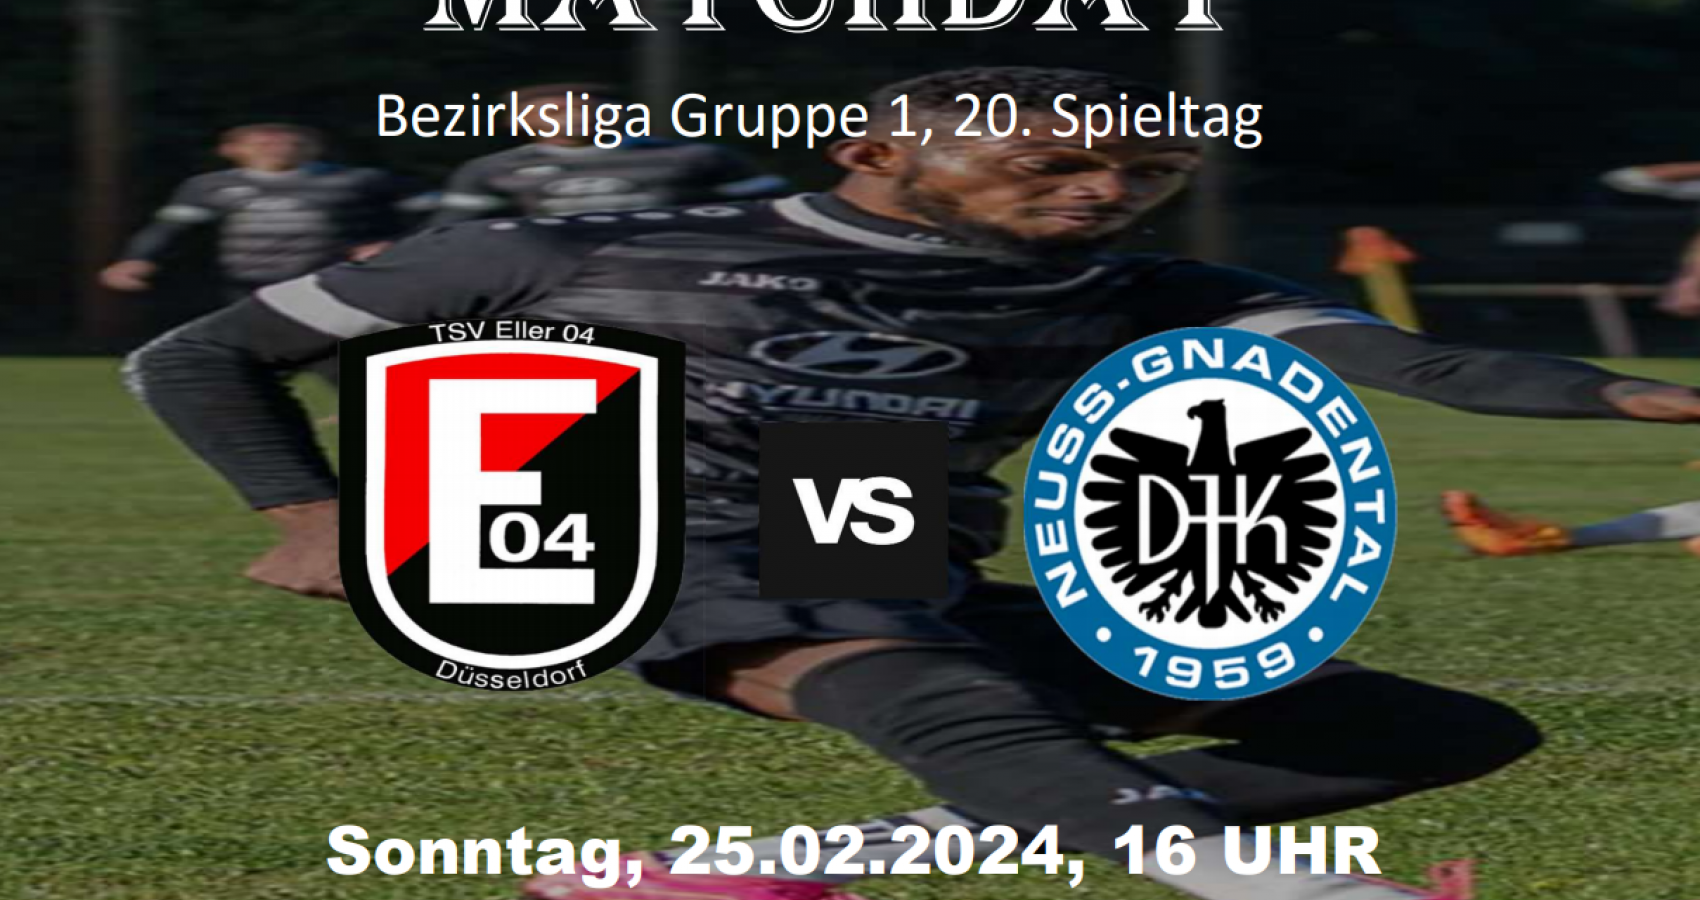 TSV Eller 04 - DJK Gnadental